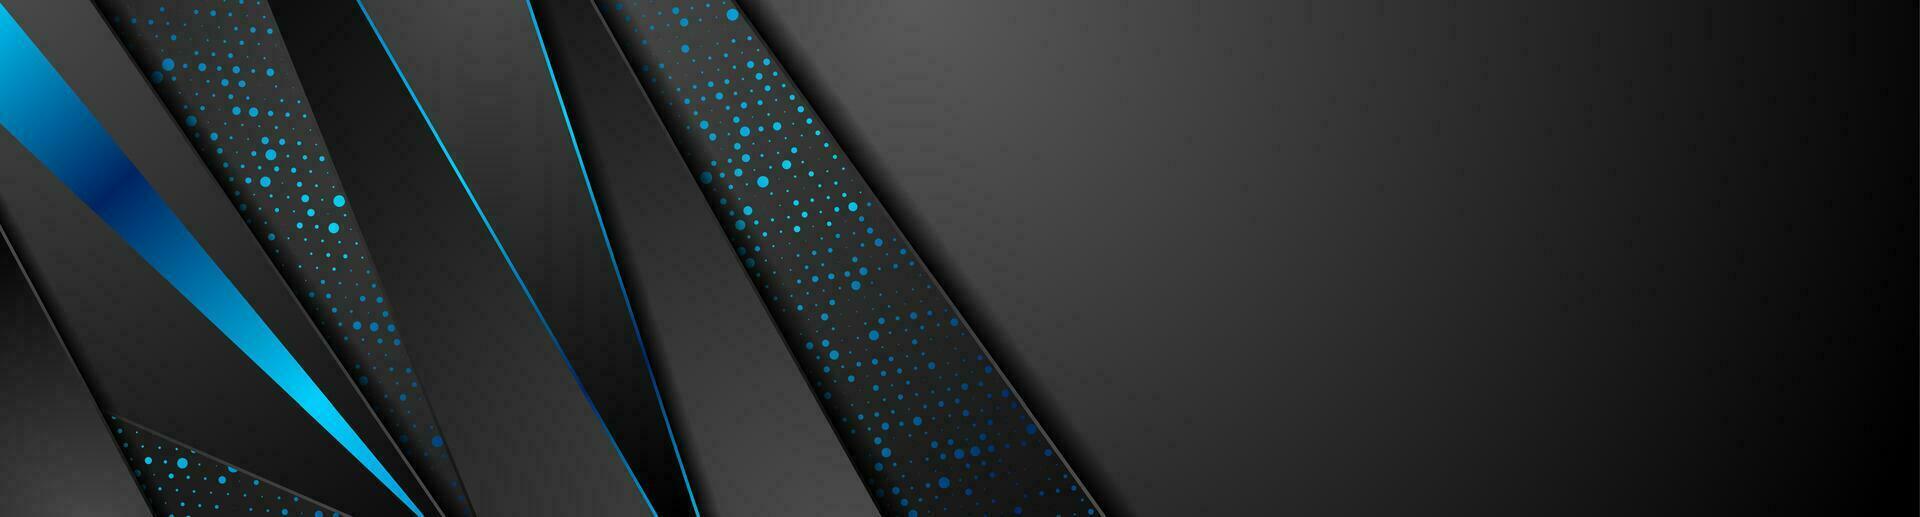 noir La technologie abstrait bannière avec bleu points vecteur